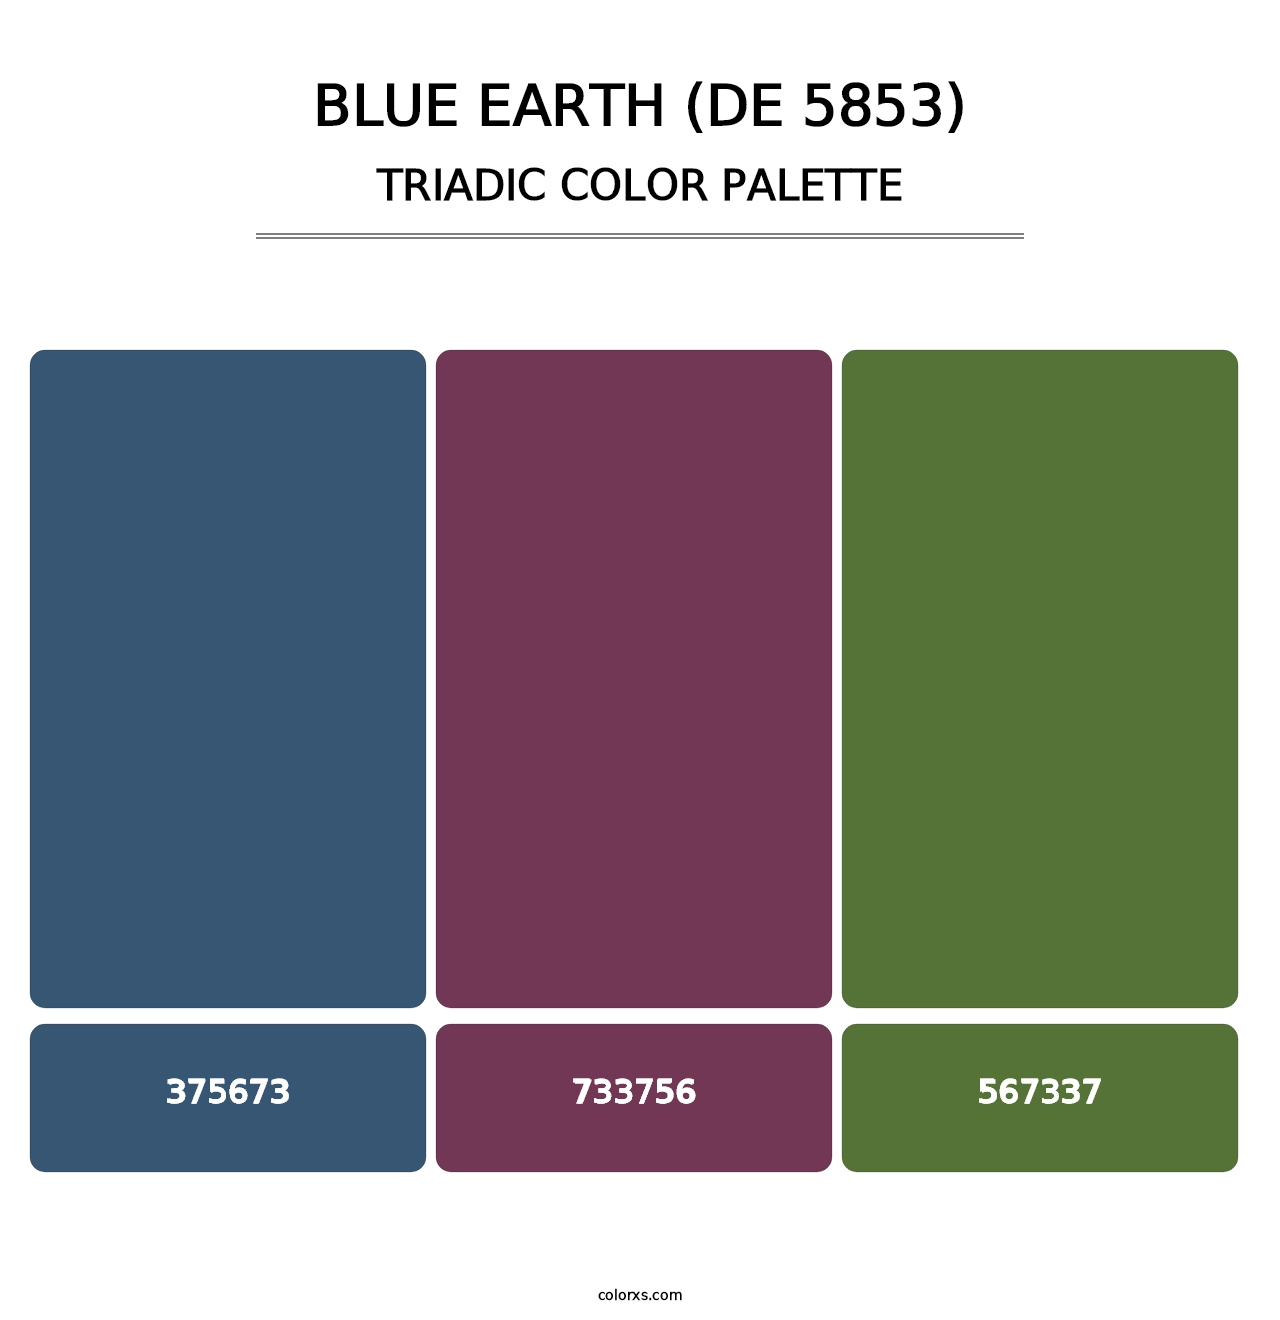 Blue Earth (DE 5853) - Triadic Color Palette